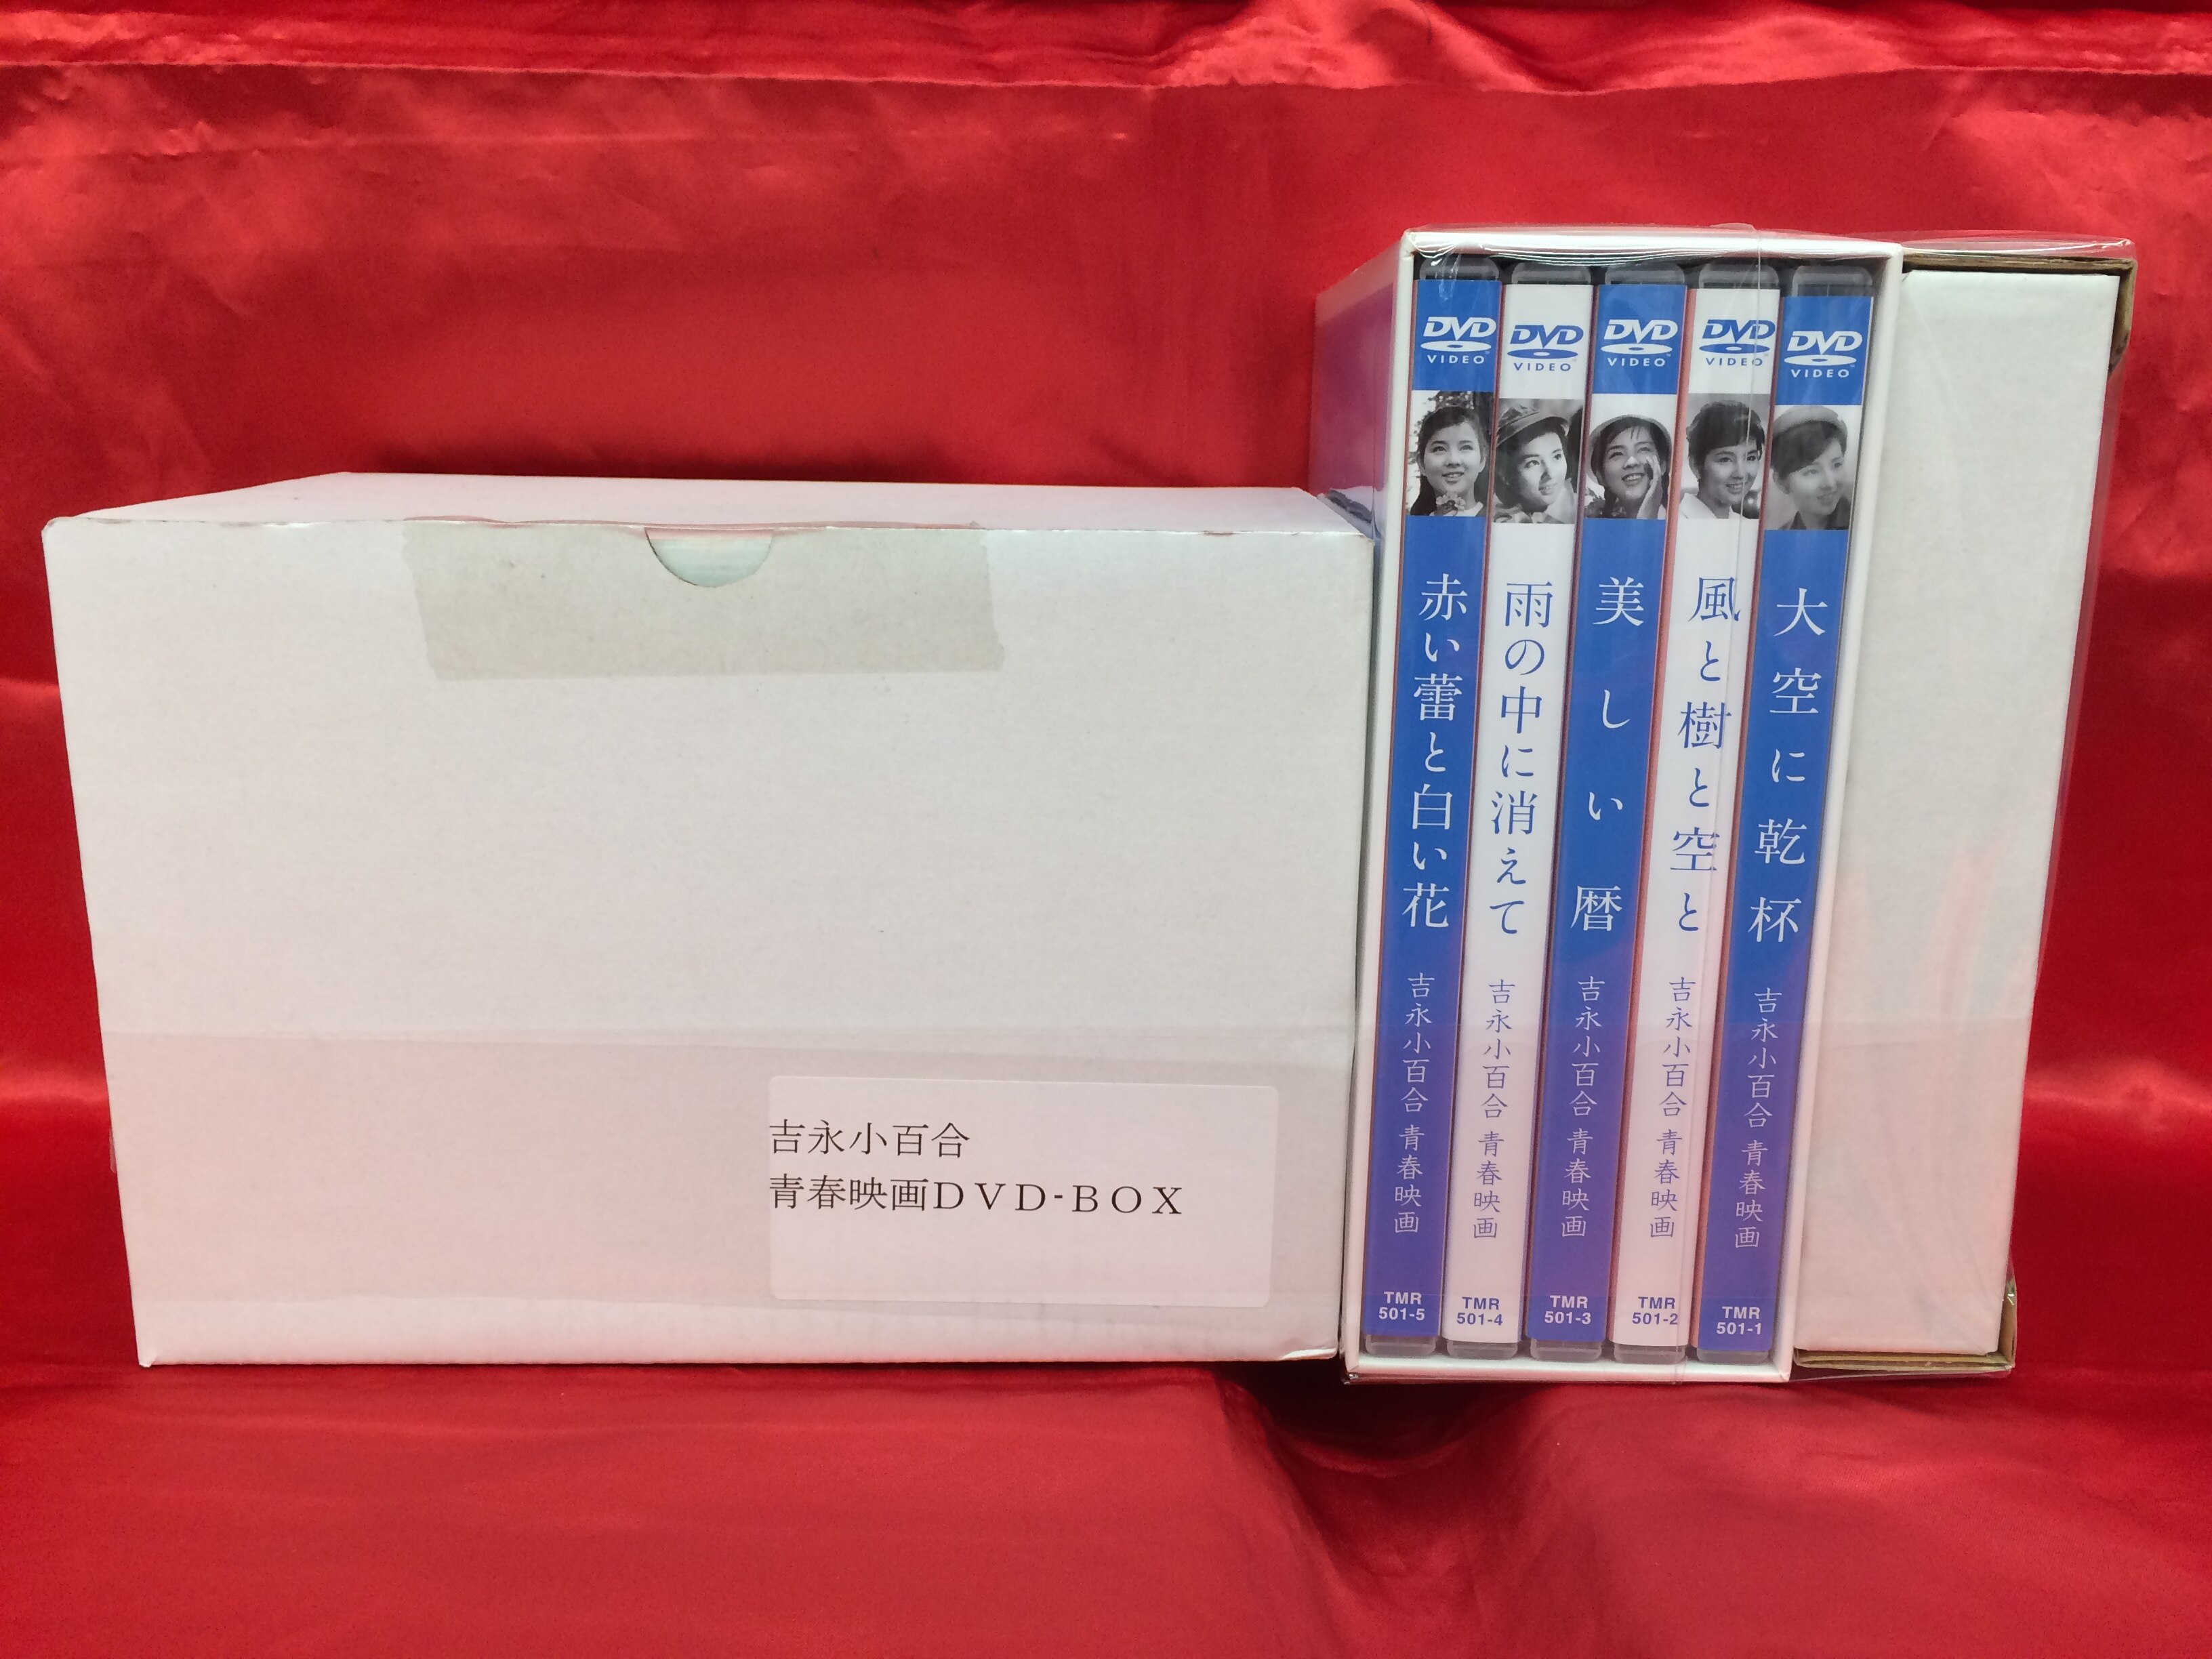 吉永小百合 青春映画 ANA特選DVD-BOX